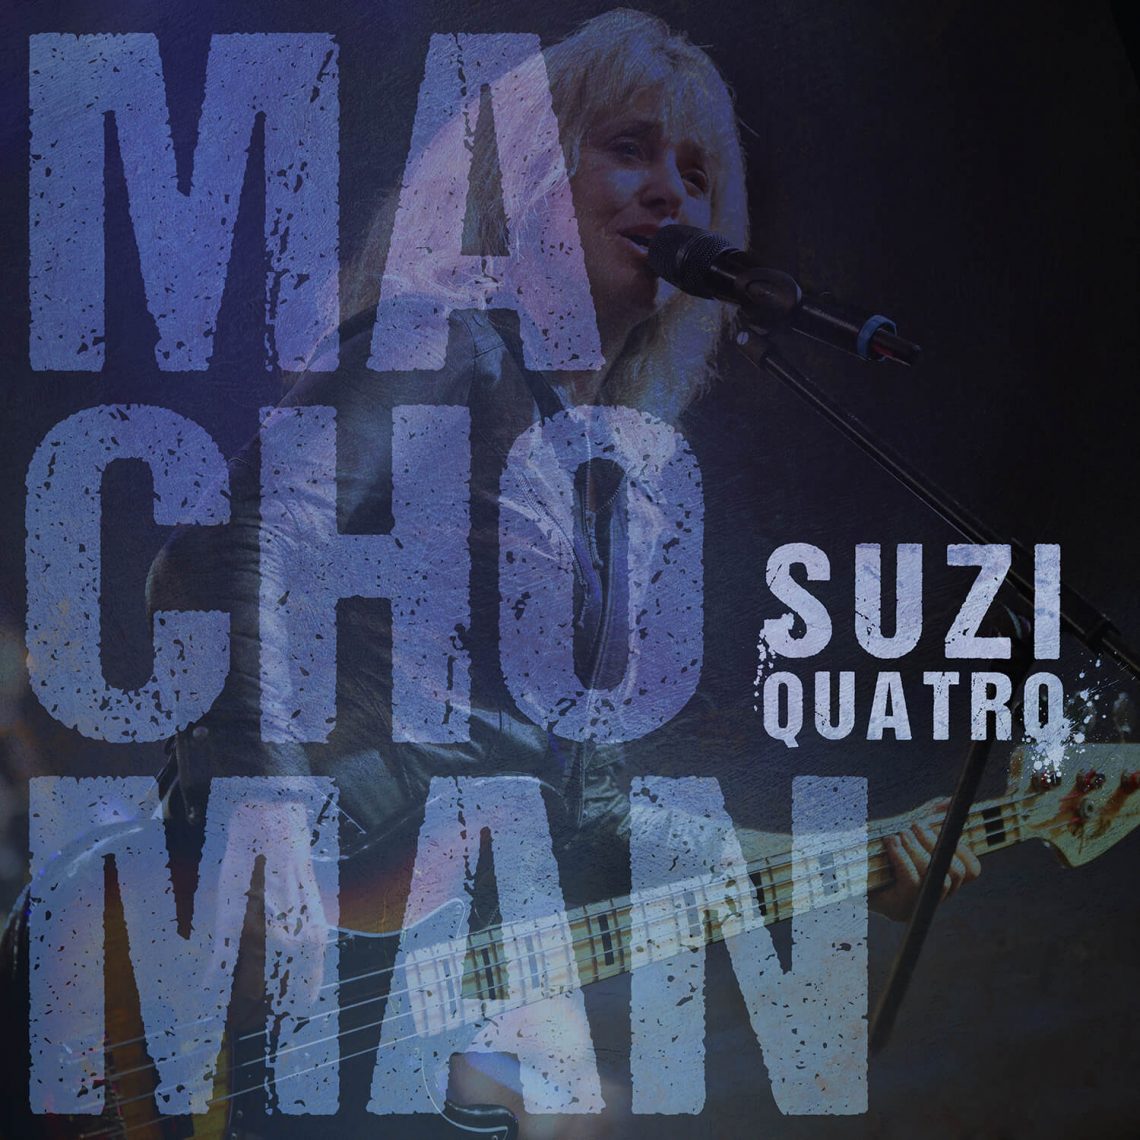 SUZI QUATRO releases second single and lyric video!